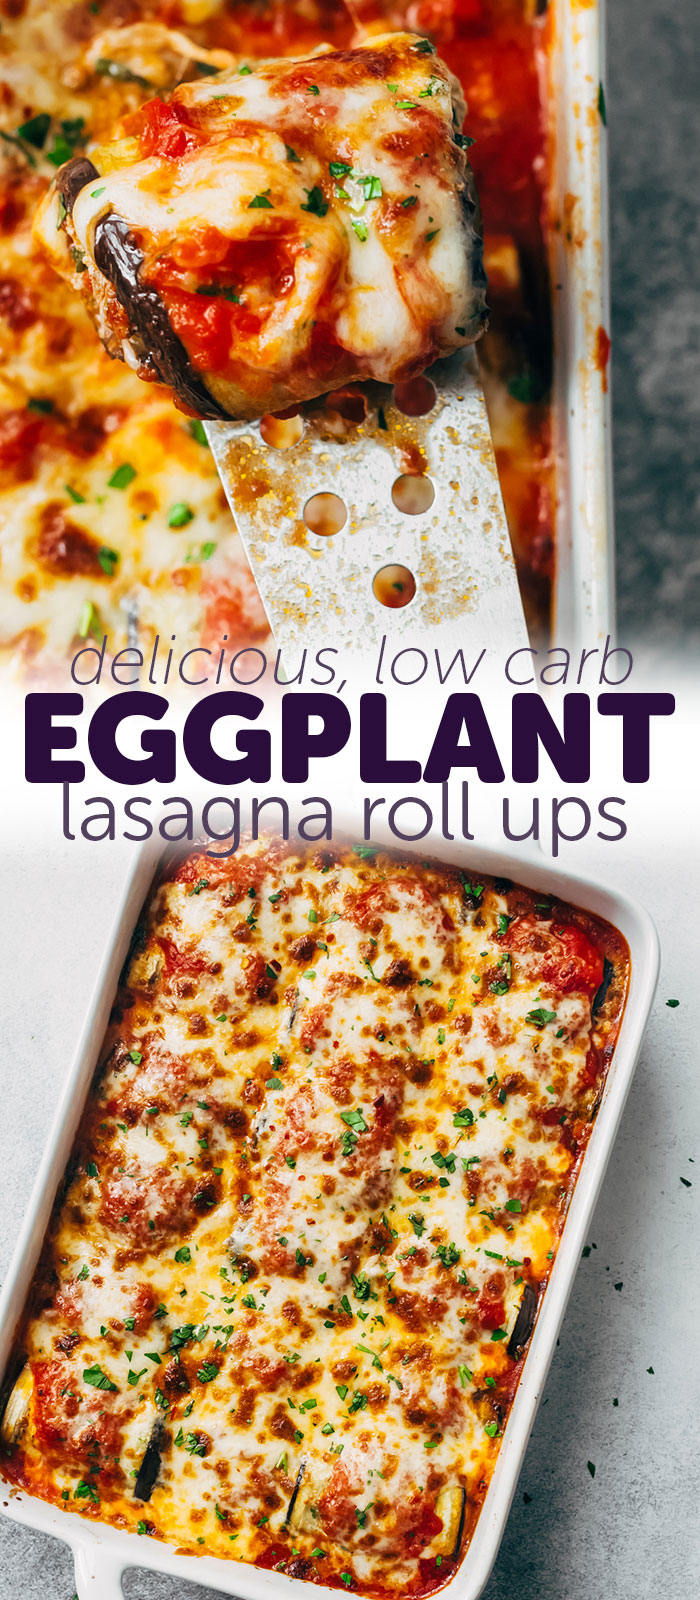  Low Carb Eggplant Lasagna Roll Ups - a healthy and lighter alternative to traditional Lasagna! #lowcarblasagna #eggplantlasagna #eggplantrollups #eggplantlasagnarollups #lowcarbdinnerideas #dinnerrecipes #lowcarbrecipes | Littlespicejar.com